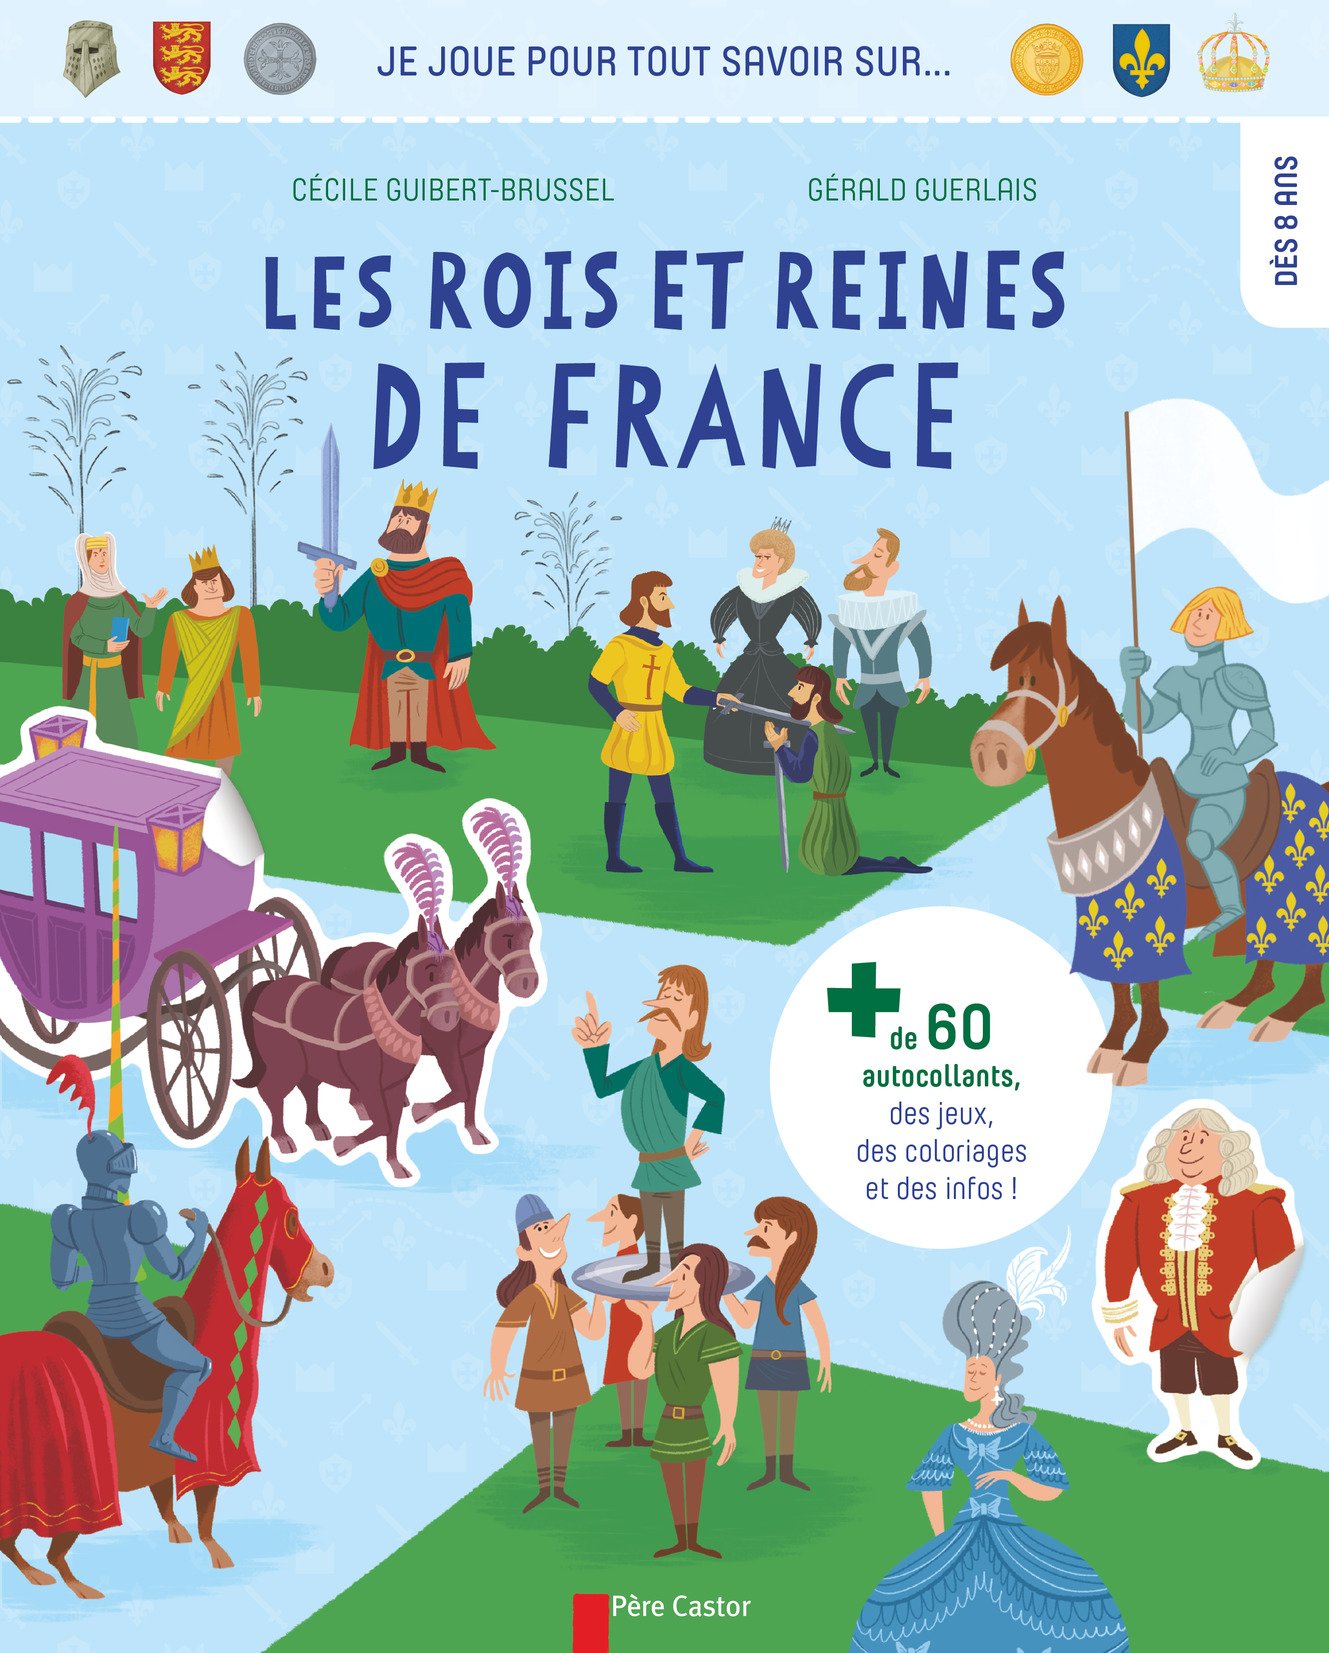 Les rois et reines de France (Je joue pour tout savoir sur...), 2016. Livre Jeunesse à partir de 8 ans.